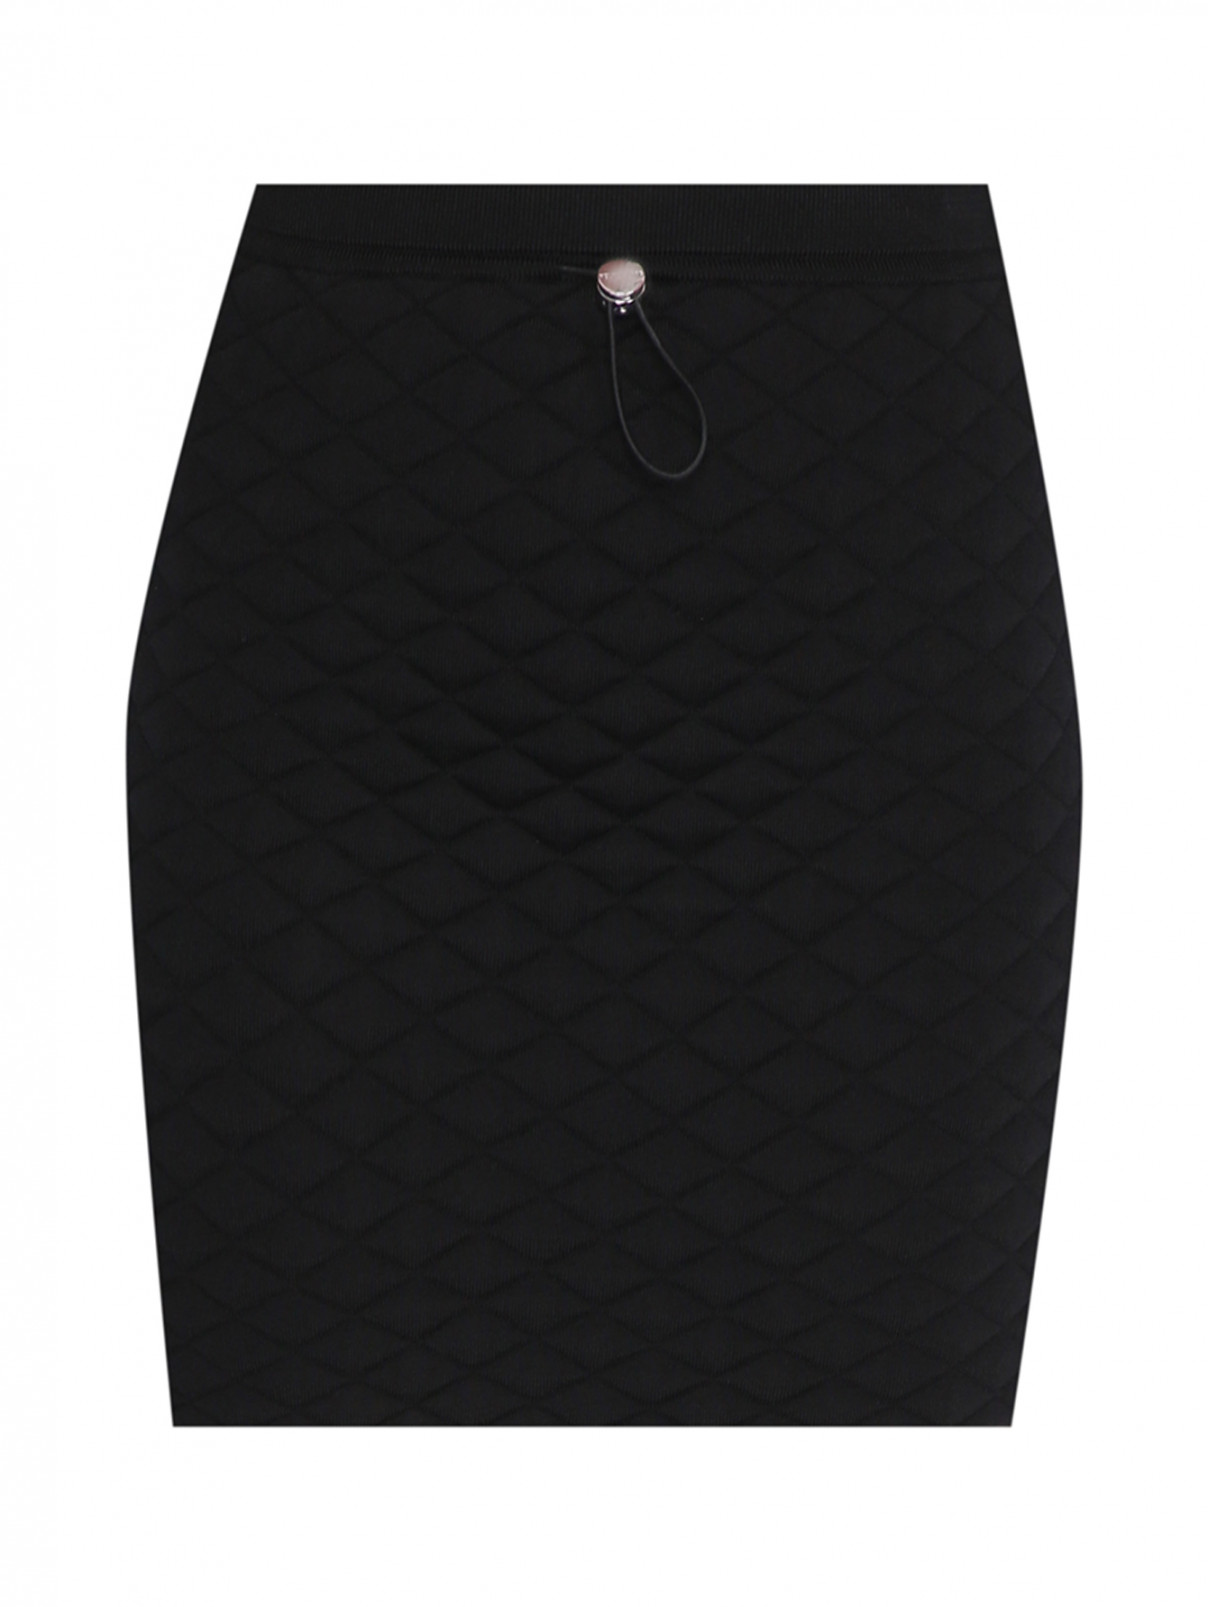 Стеганая юбка-мини из вискозы на резинке Helmut Lang  –  Общий вид  – Цвет:  Черный